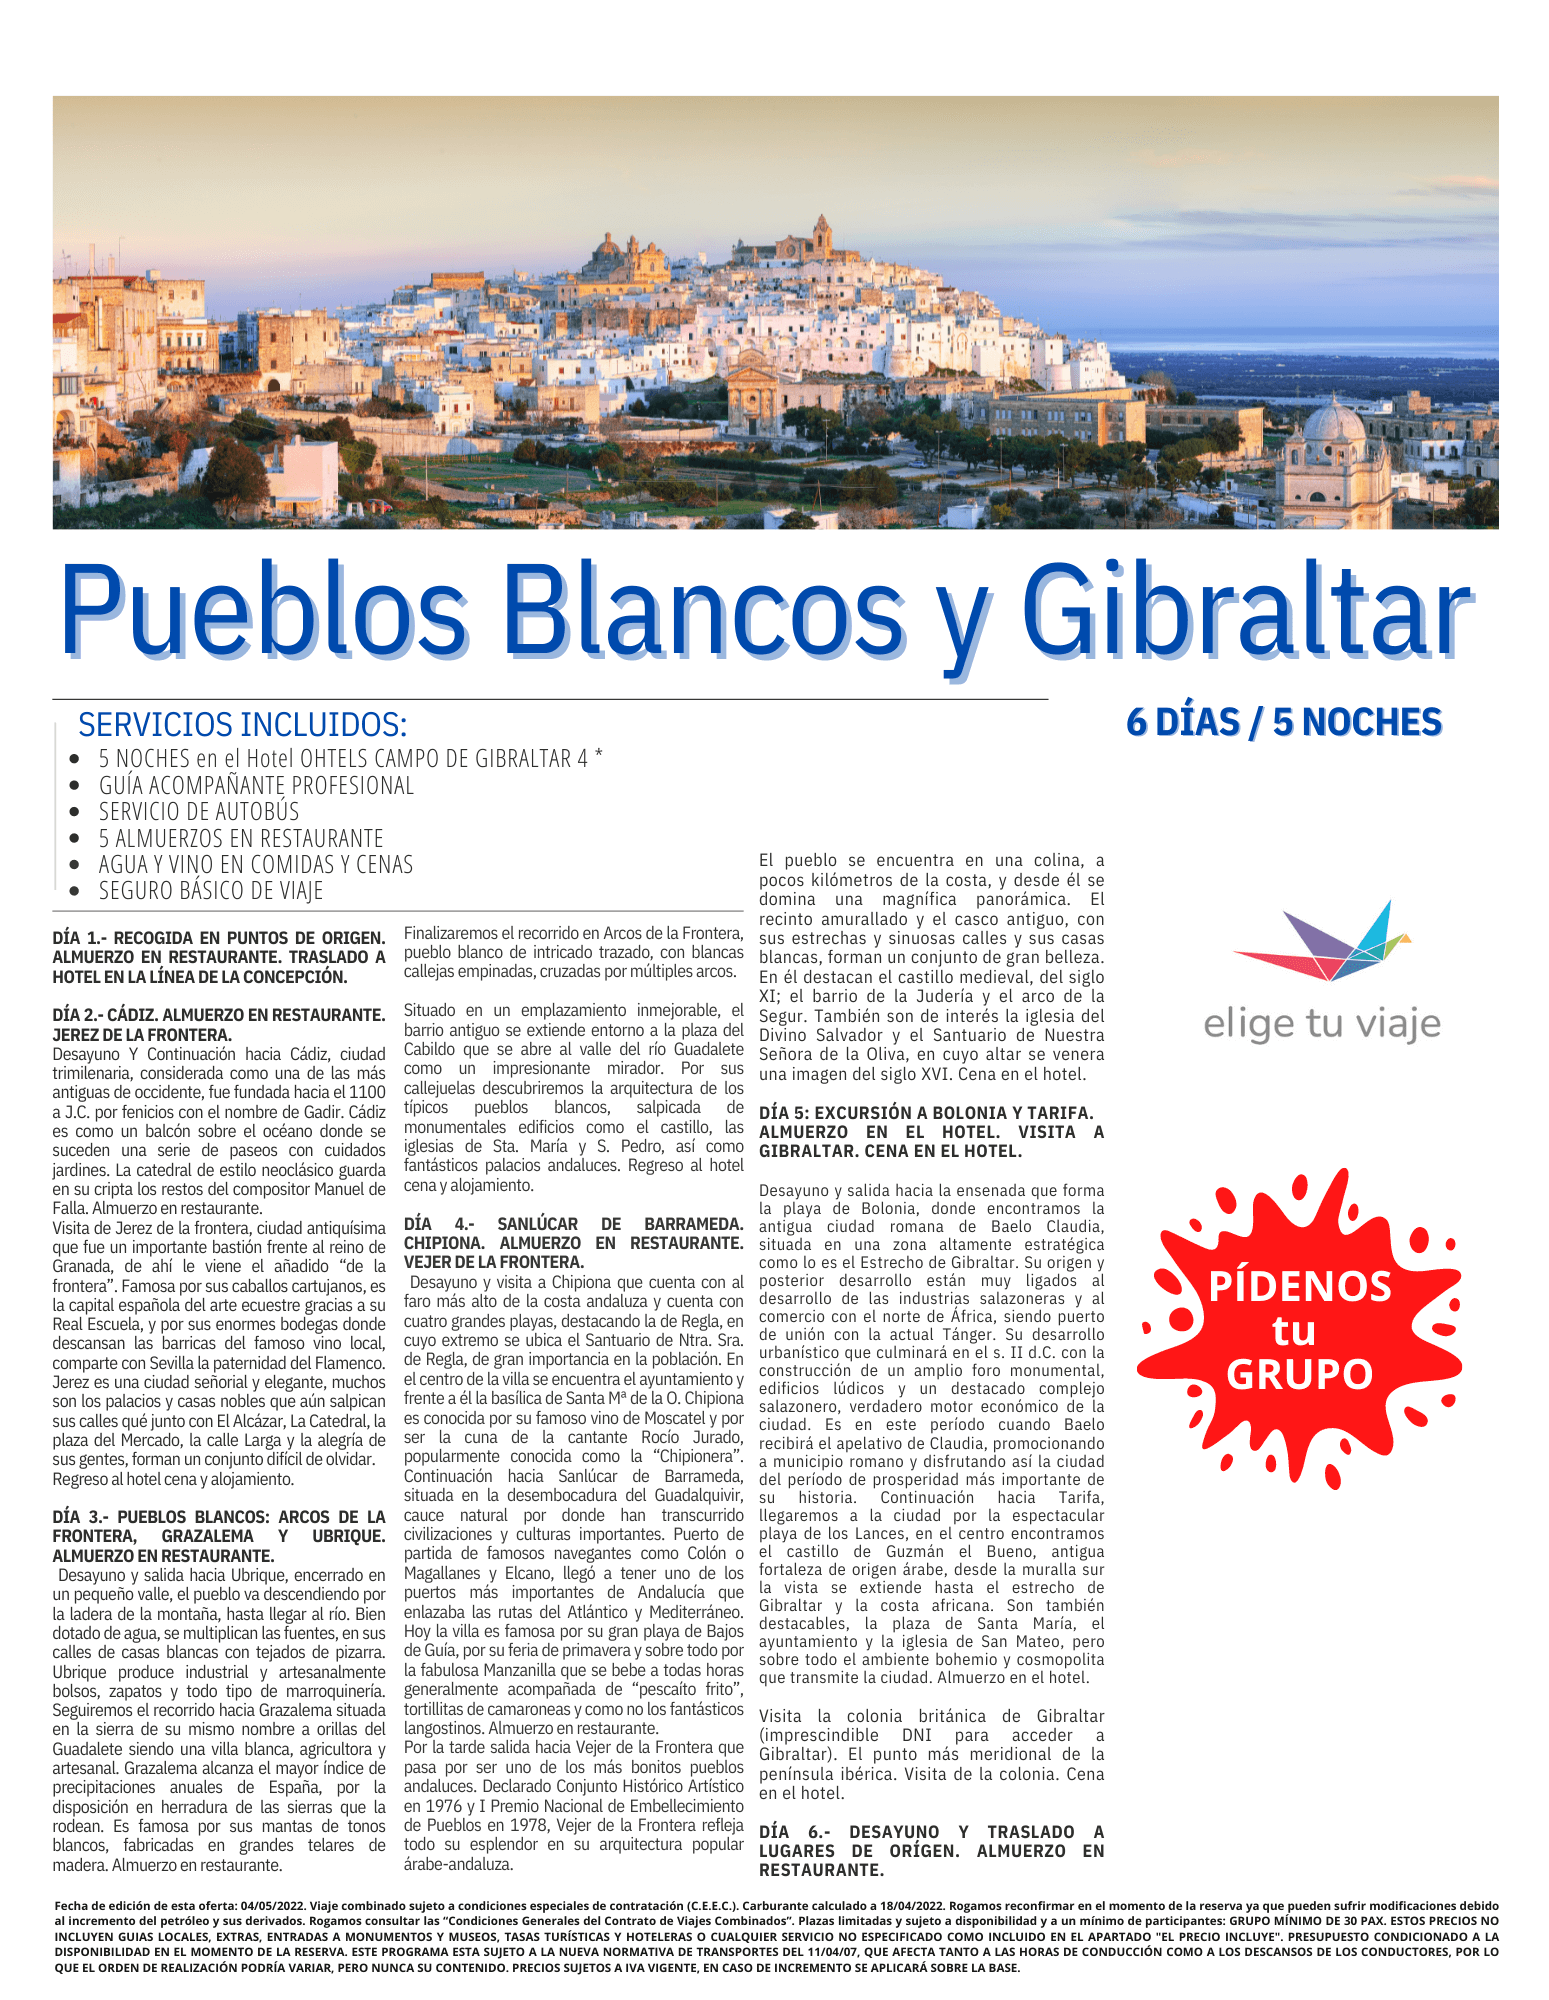 ELIGE Programa Grupos Pueblos Blancos y Gibraltar con Agencia de Viajes Elige tu Viaje